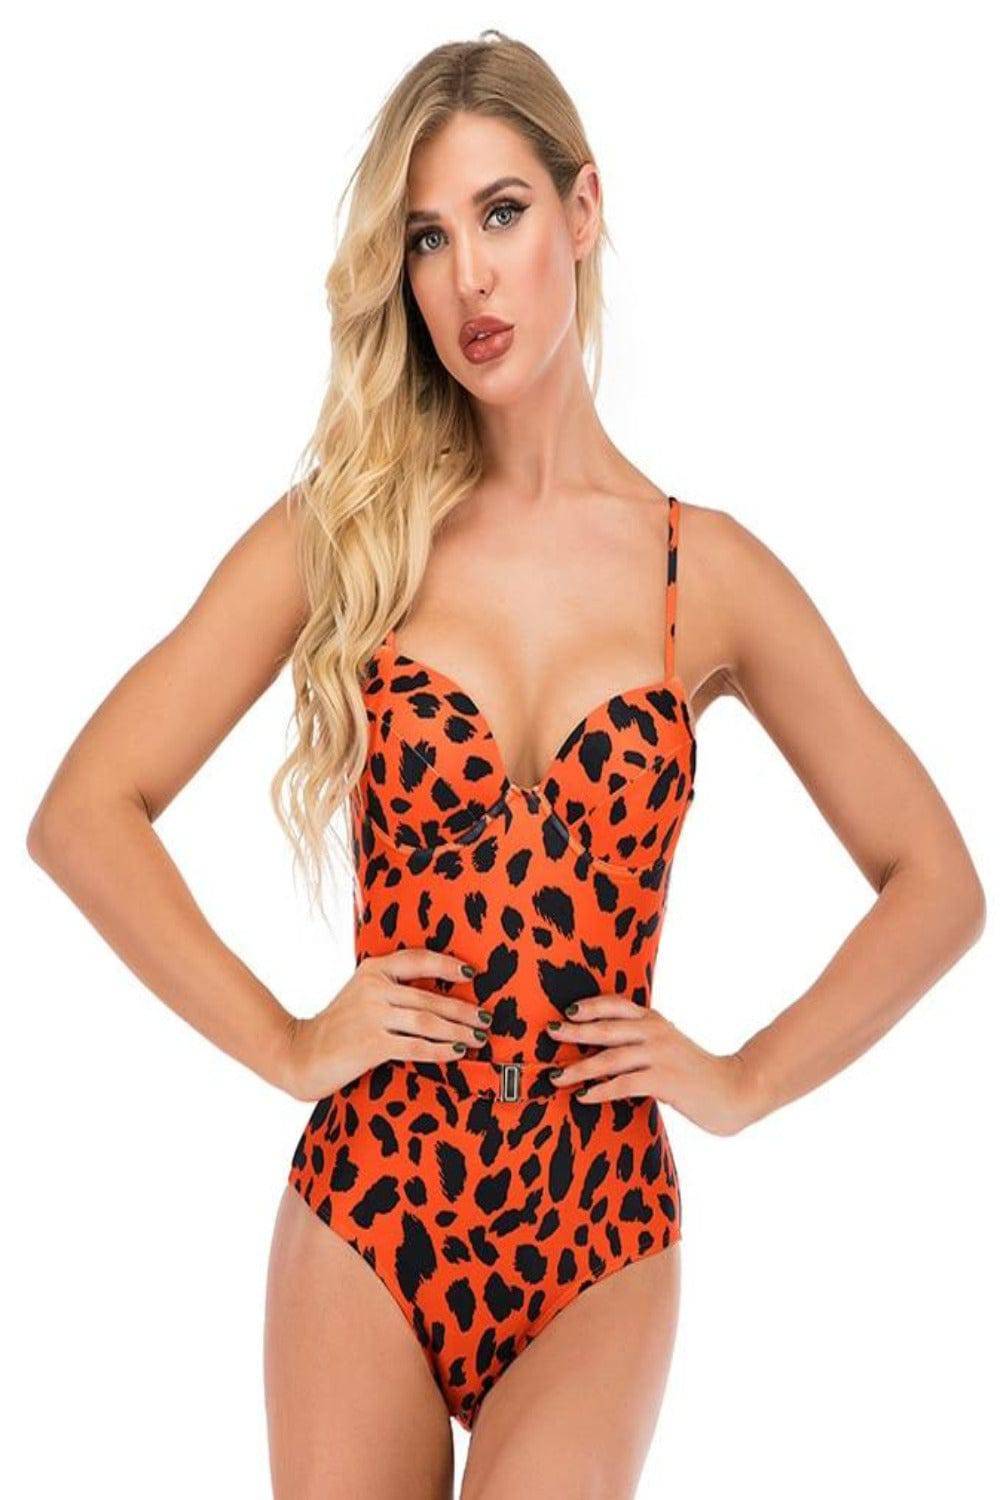 Leopard Print Corset Plus size Swimsuit - Orange - TGC Boutique - Leopard Plus Size Swimsuit